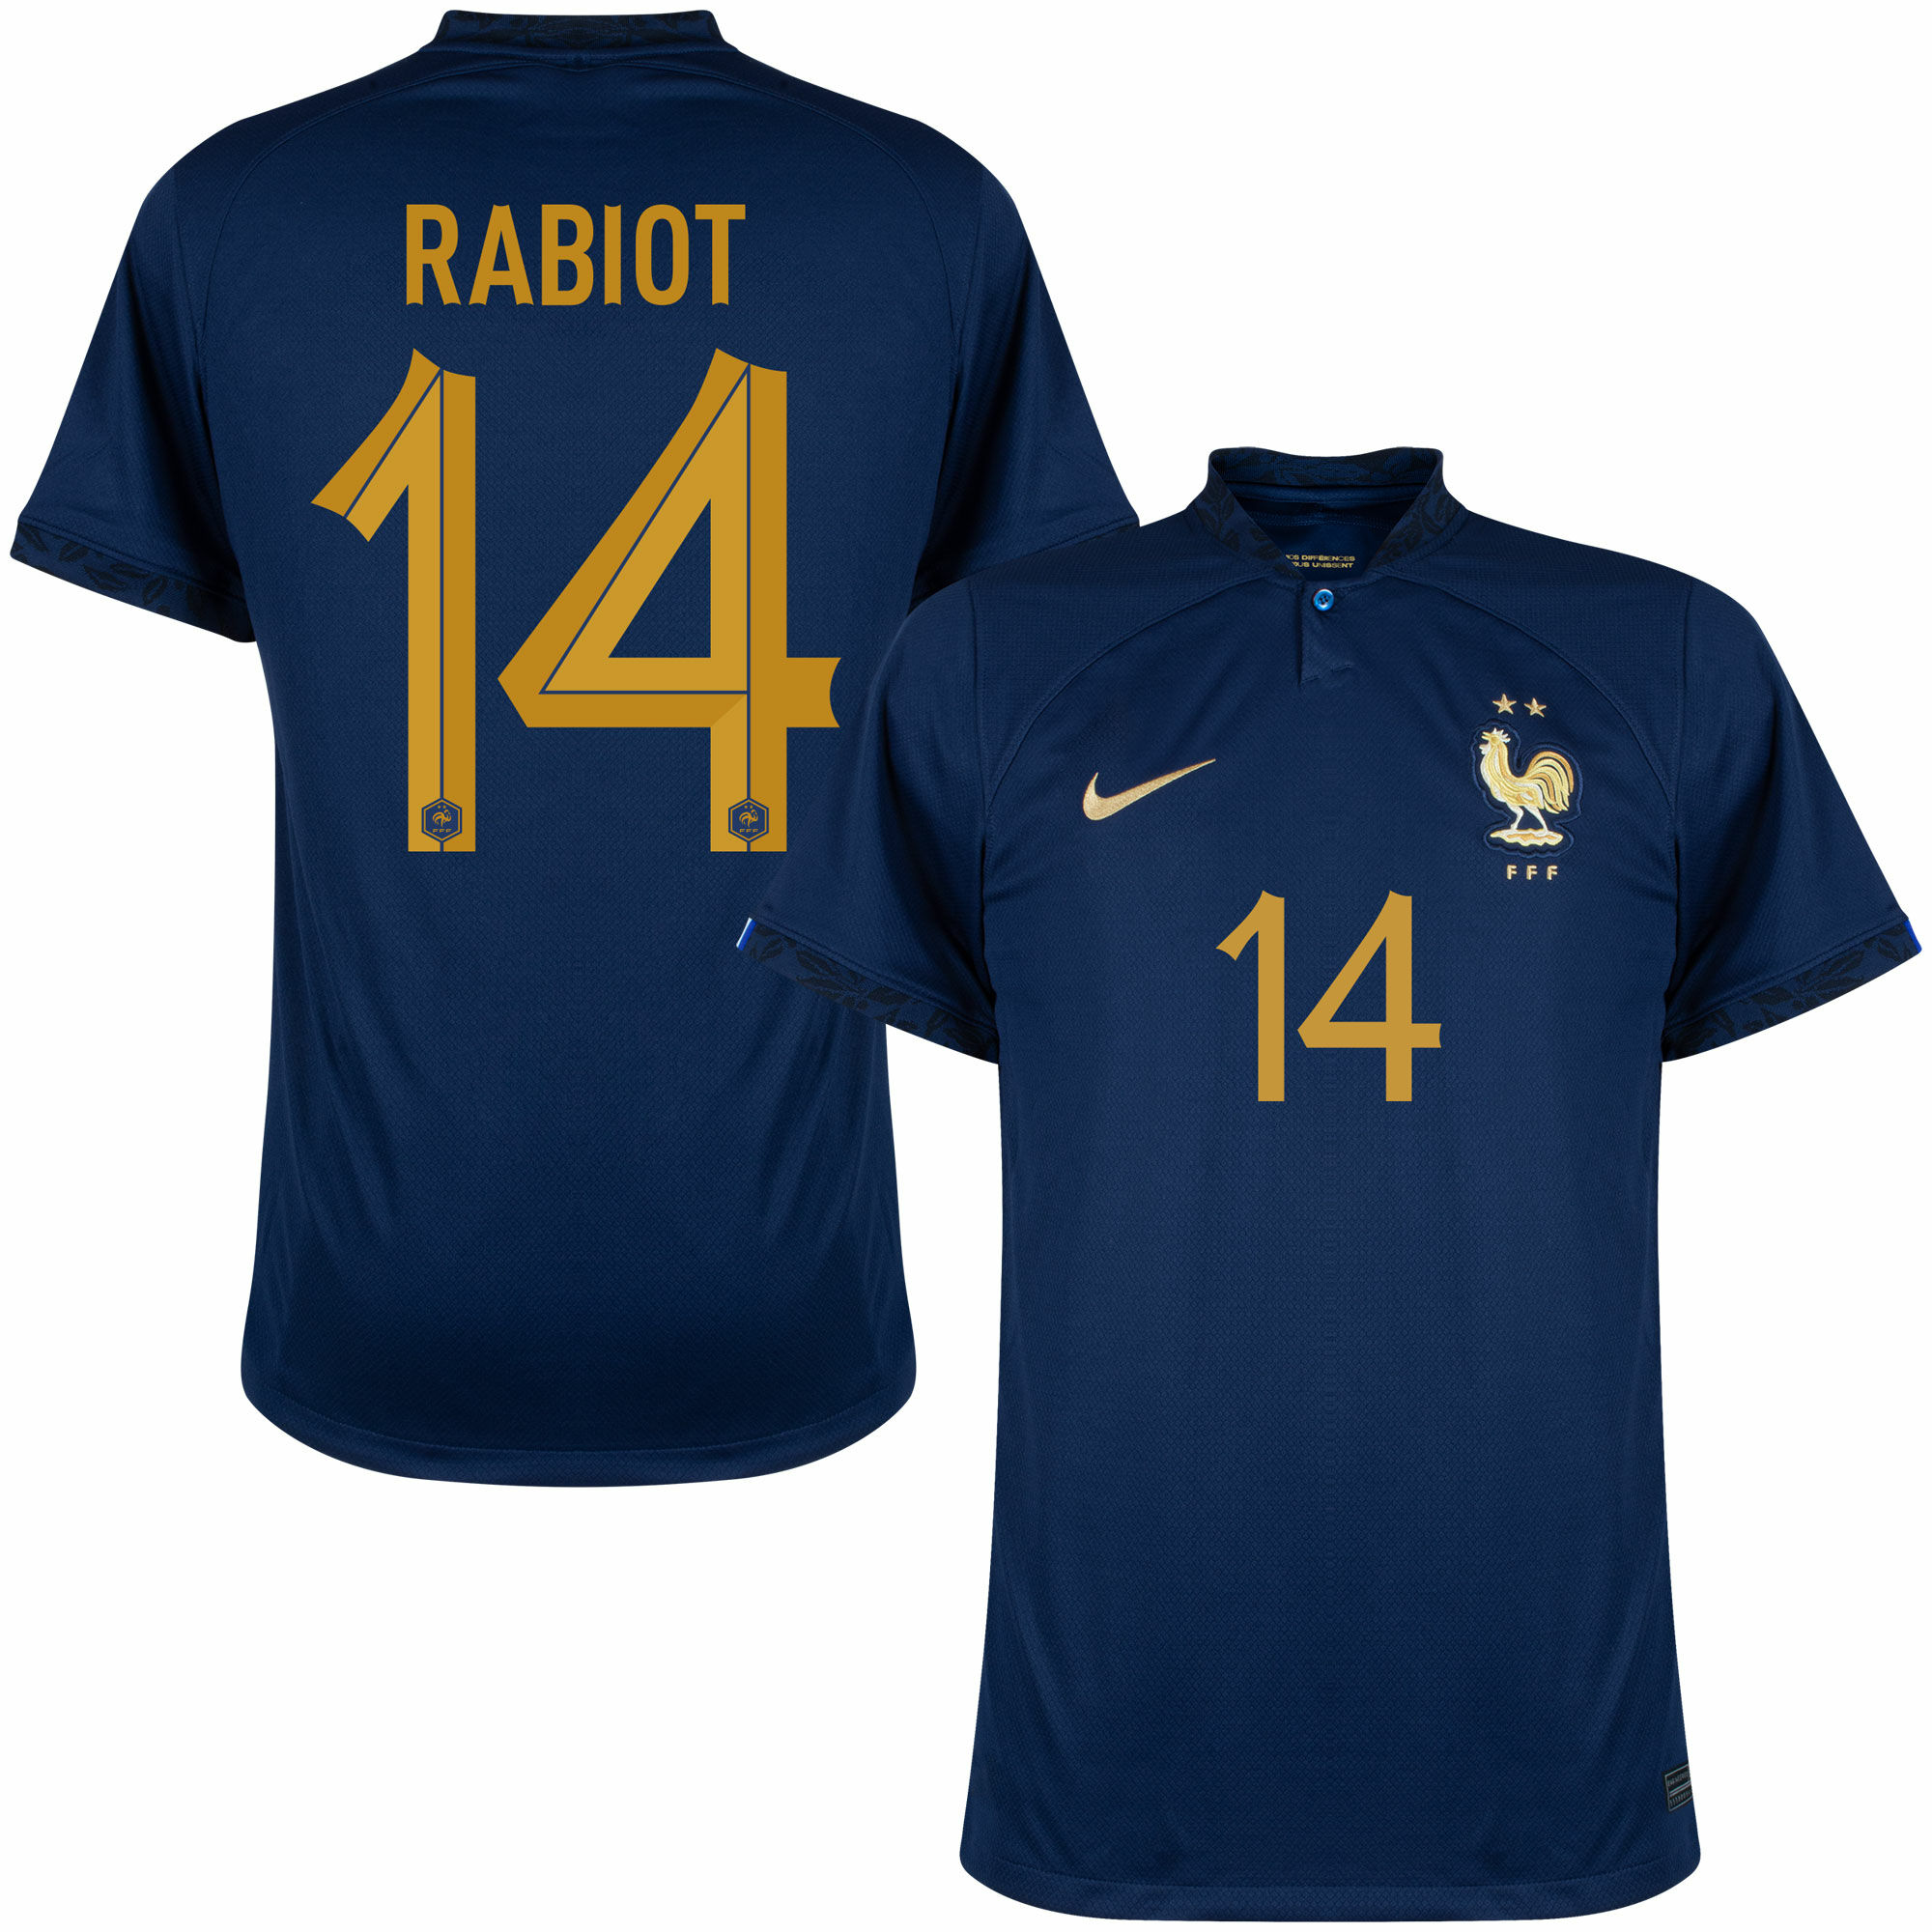 Francie - Dres fotbalový - Adrien Rabiot, oficiální potisk, domácí, sezóna 2022/23, číslo 14, modrý